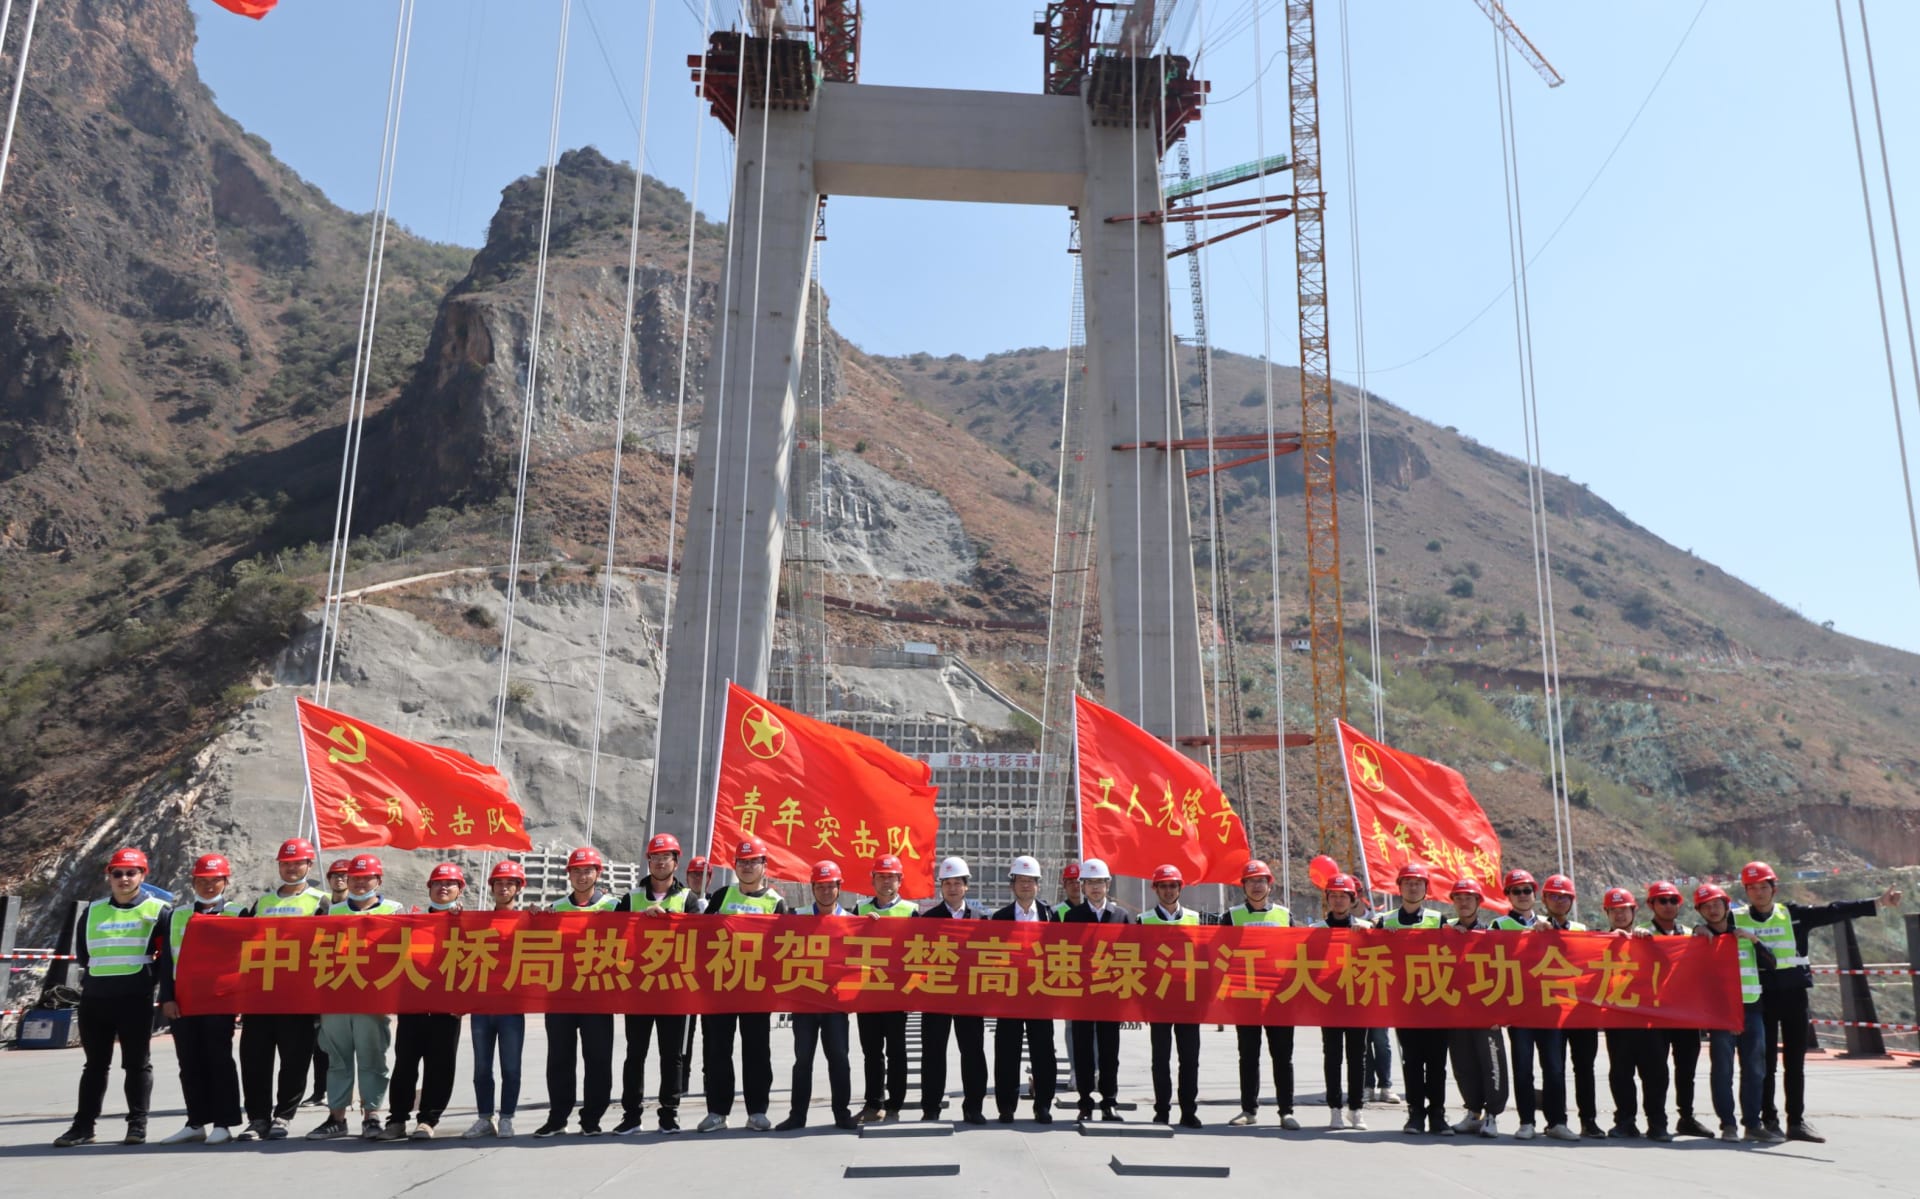 "أعجوبة هندسية"..الصين تعلن موعد افتتاح جسر معلق حطم الأرقام القياسية